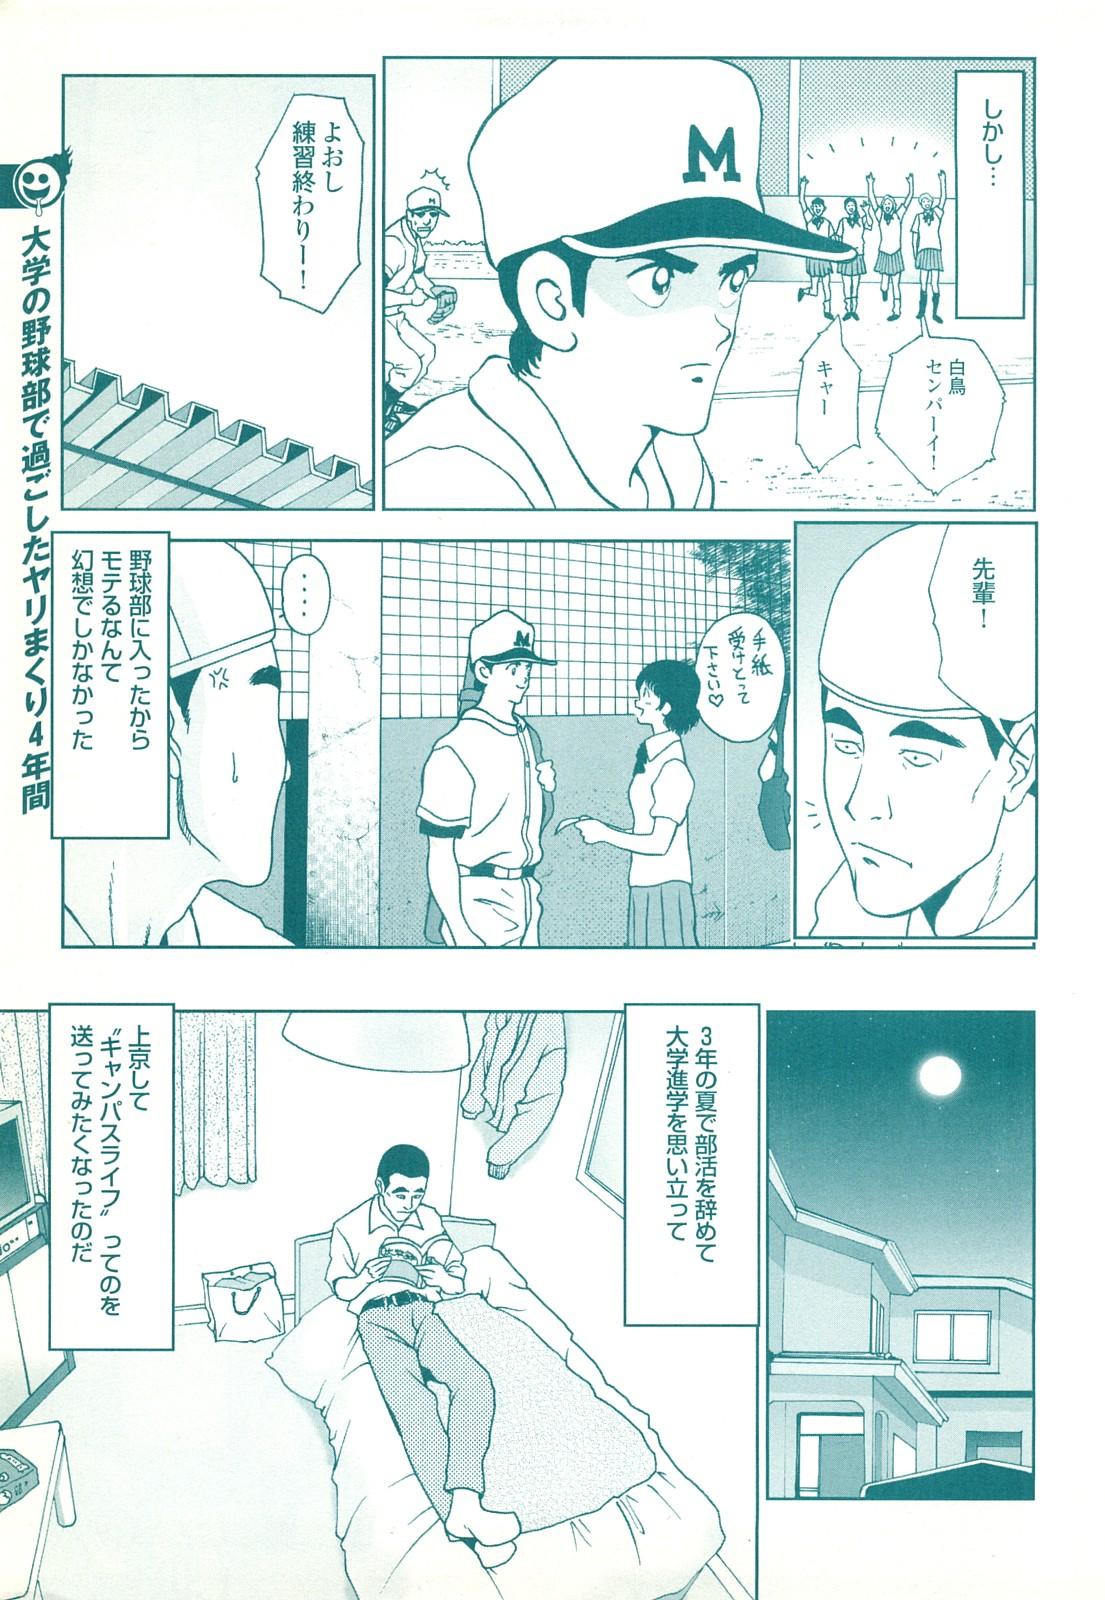 コミック裏モノJAPAN Vol.18 今井のりたつスペシャル号 142